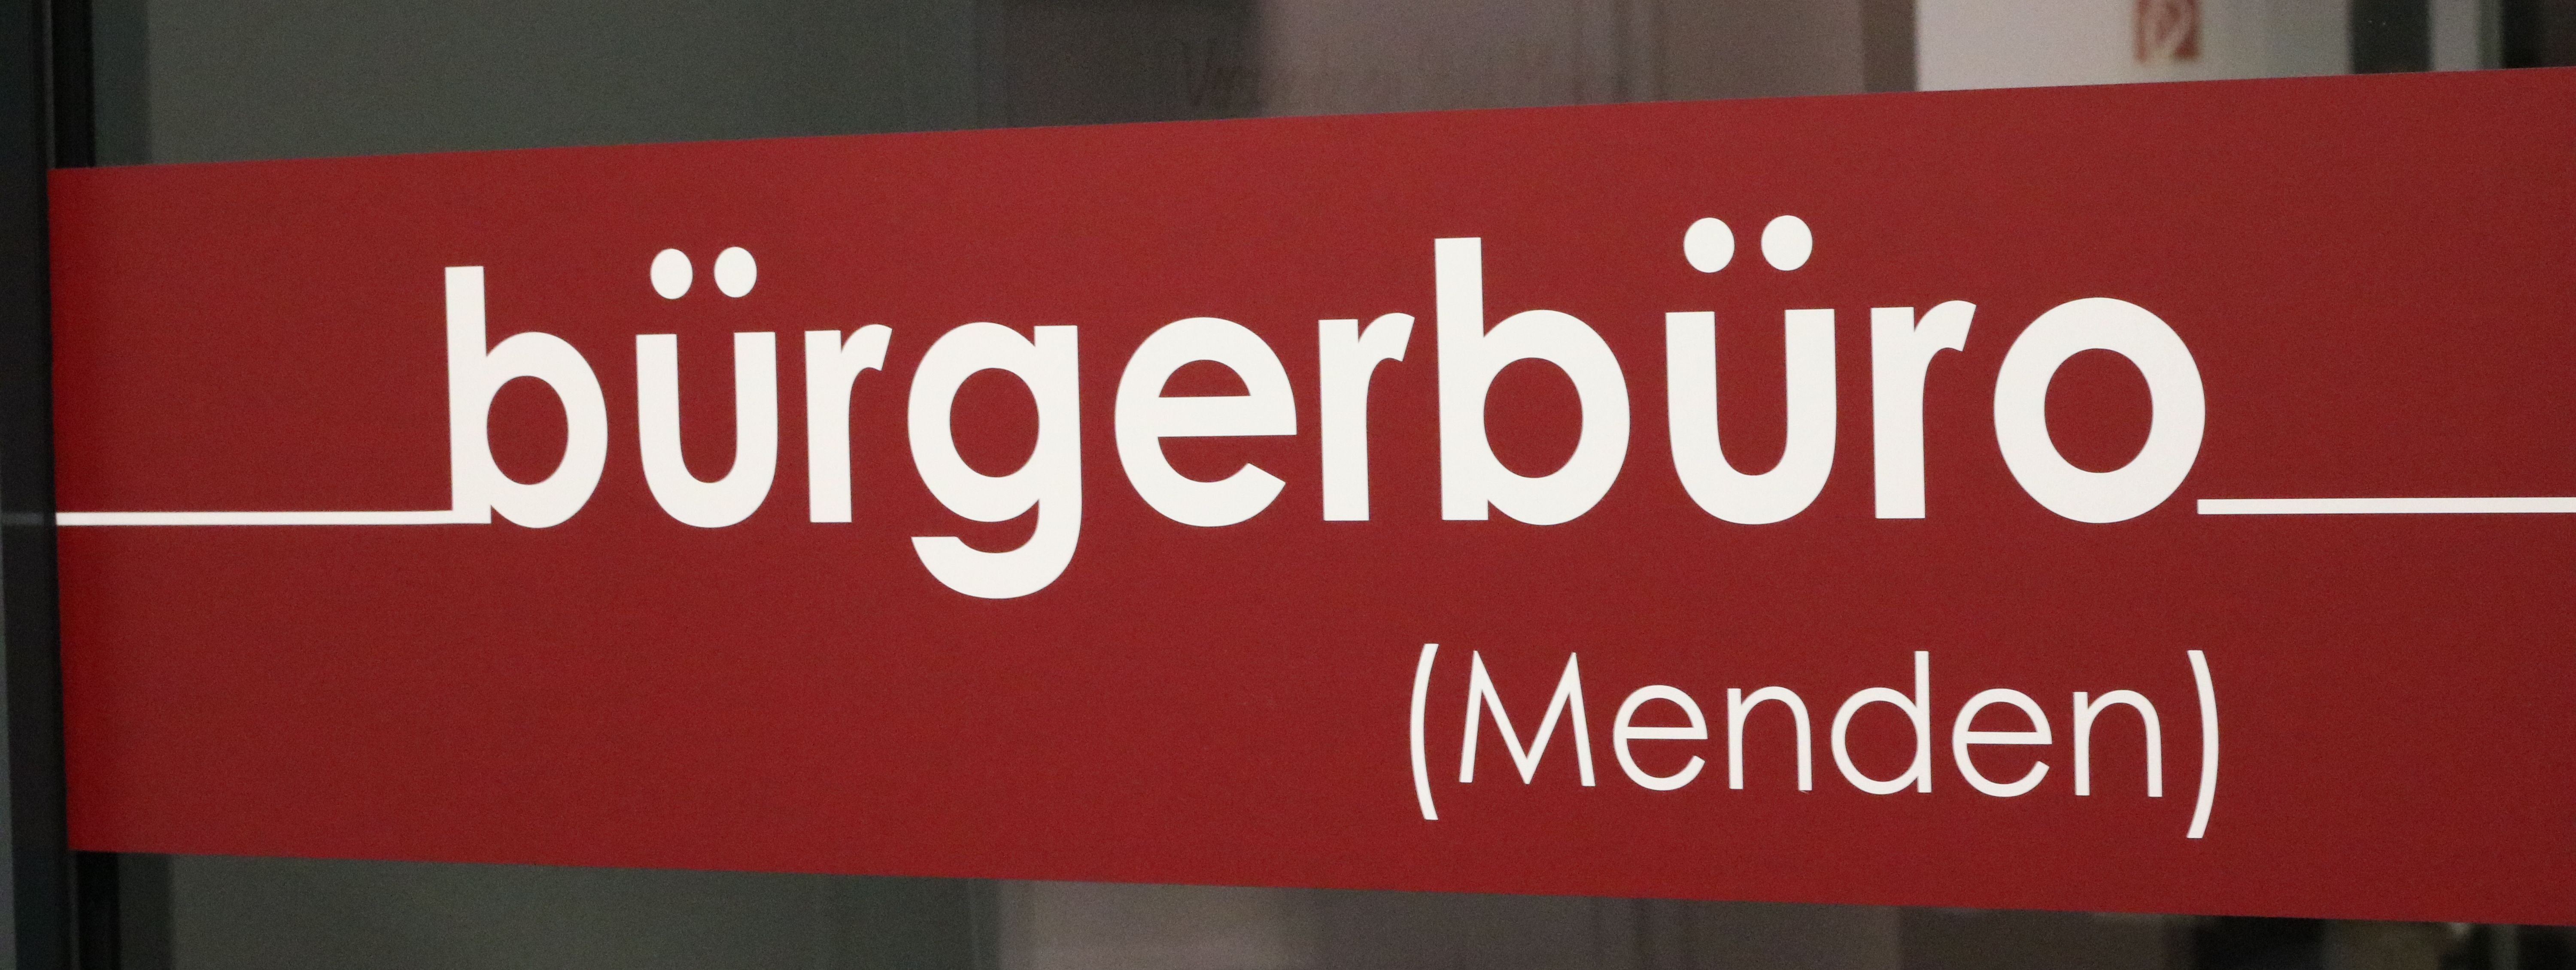 Der rote Aufkleber an der Eingangstür zum Bürgerbüro, auf dem in weißen Buchstaben das Wort "Bürgerbüro" zu lesen ist.